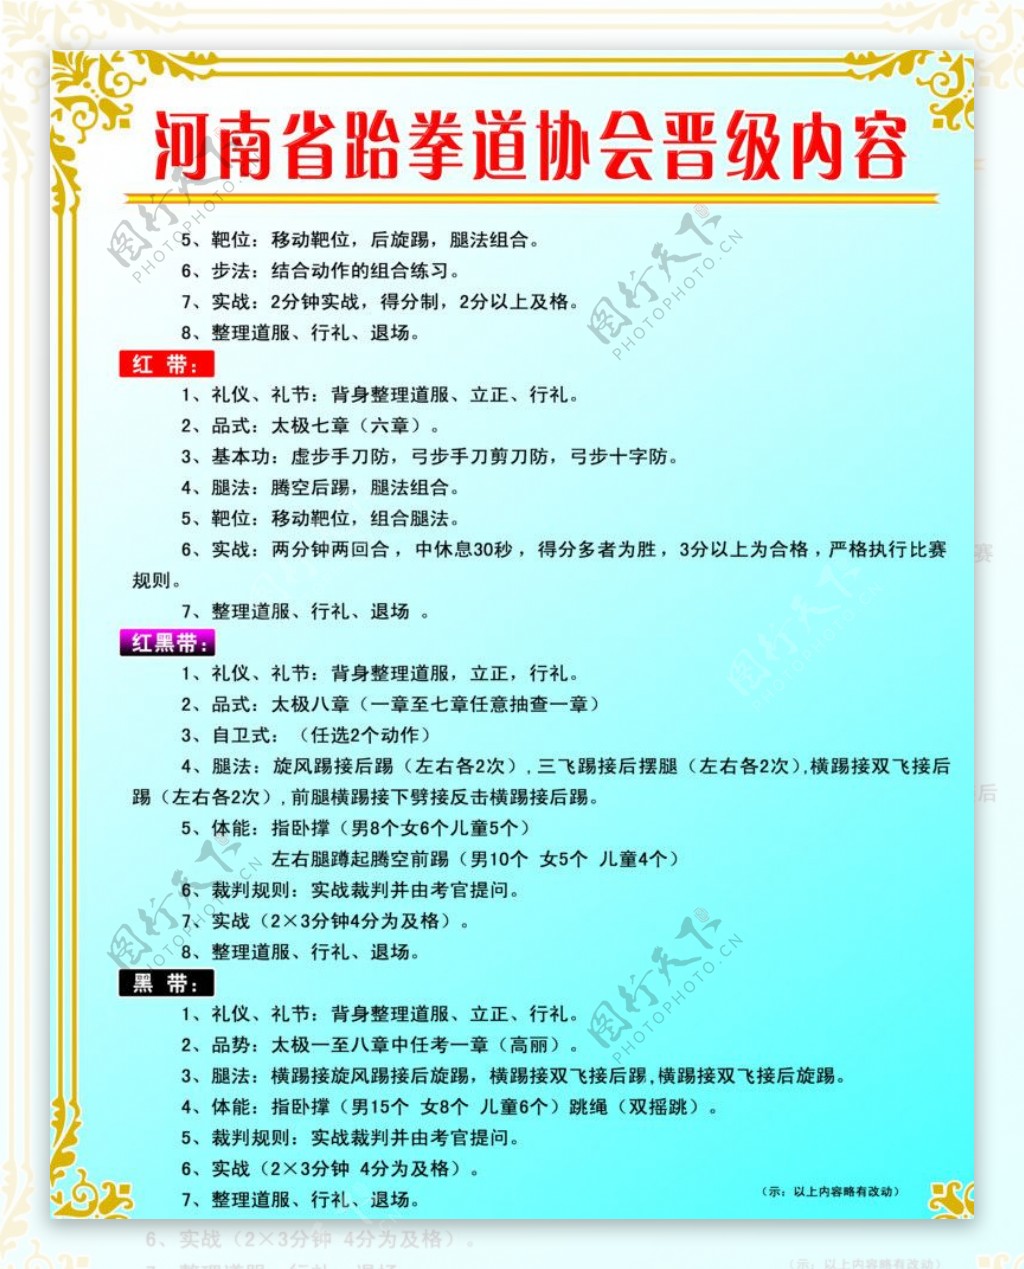 河南省跆拳道协会晋级内容图片